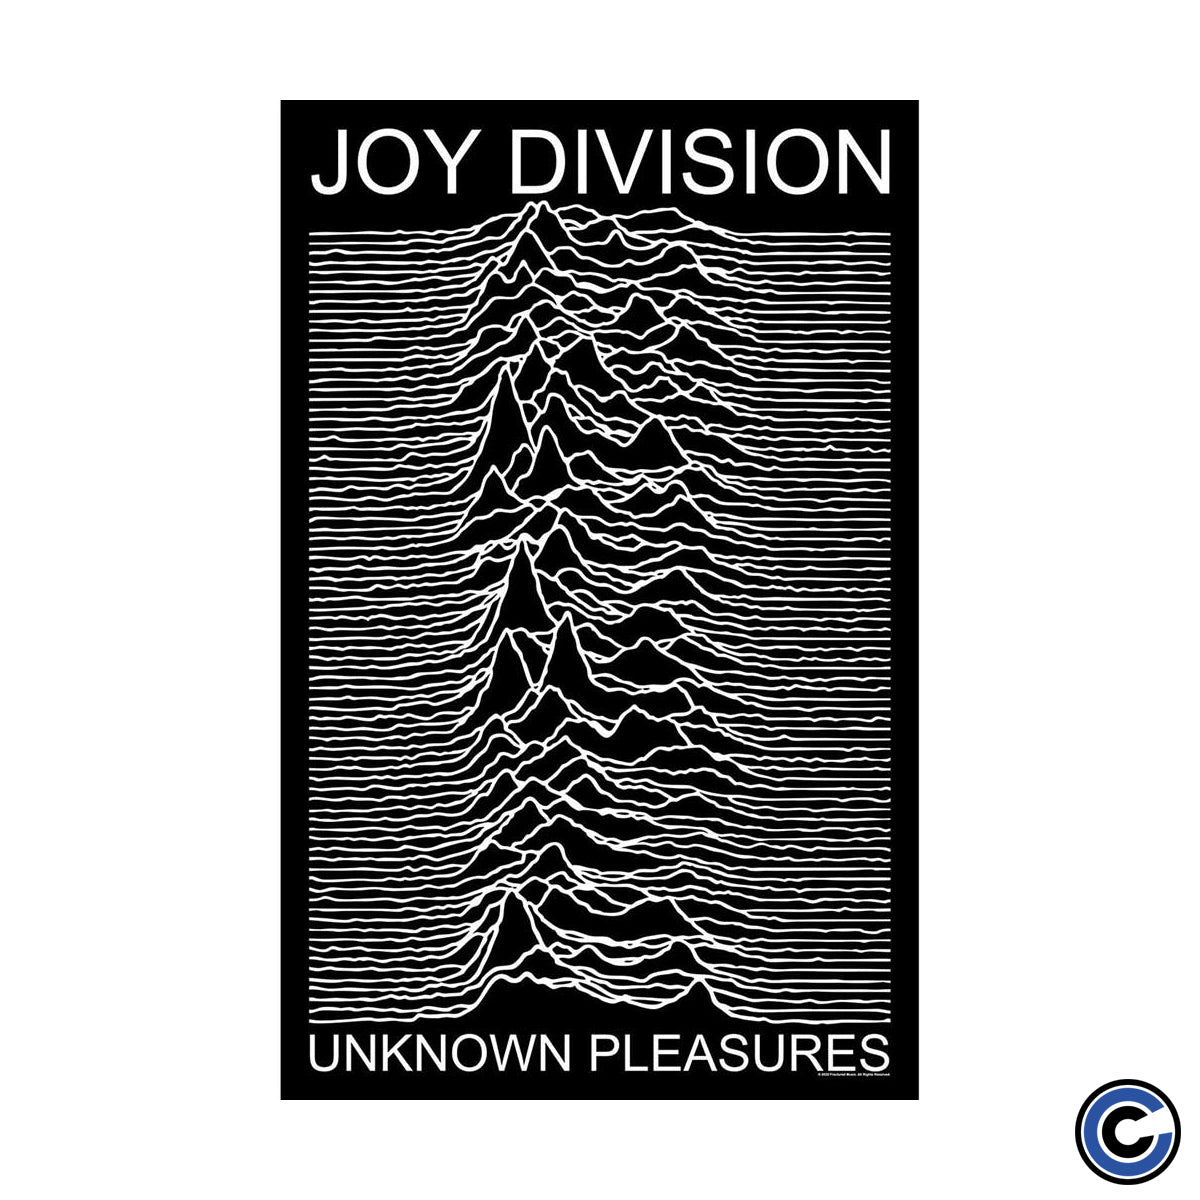 Joy Division "Unkown Pleasures" Poster